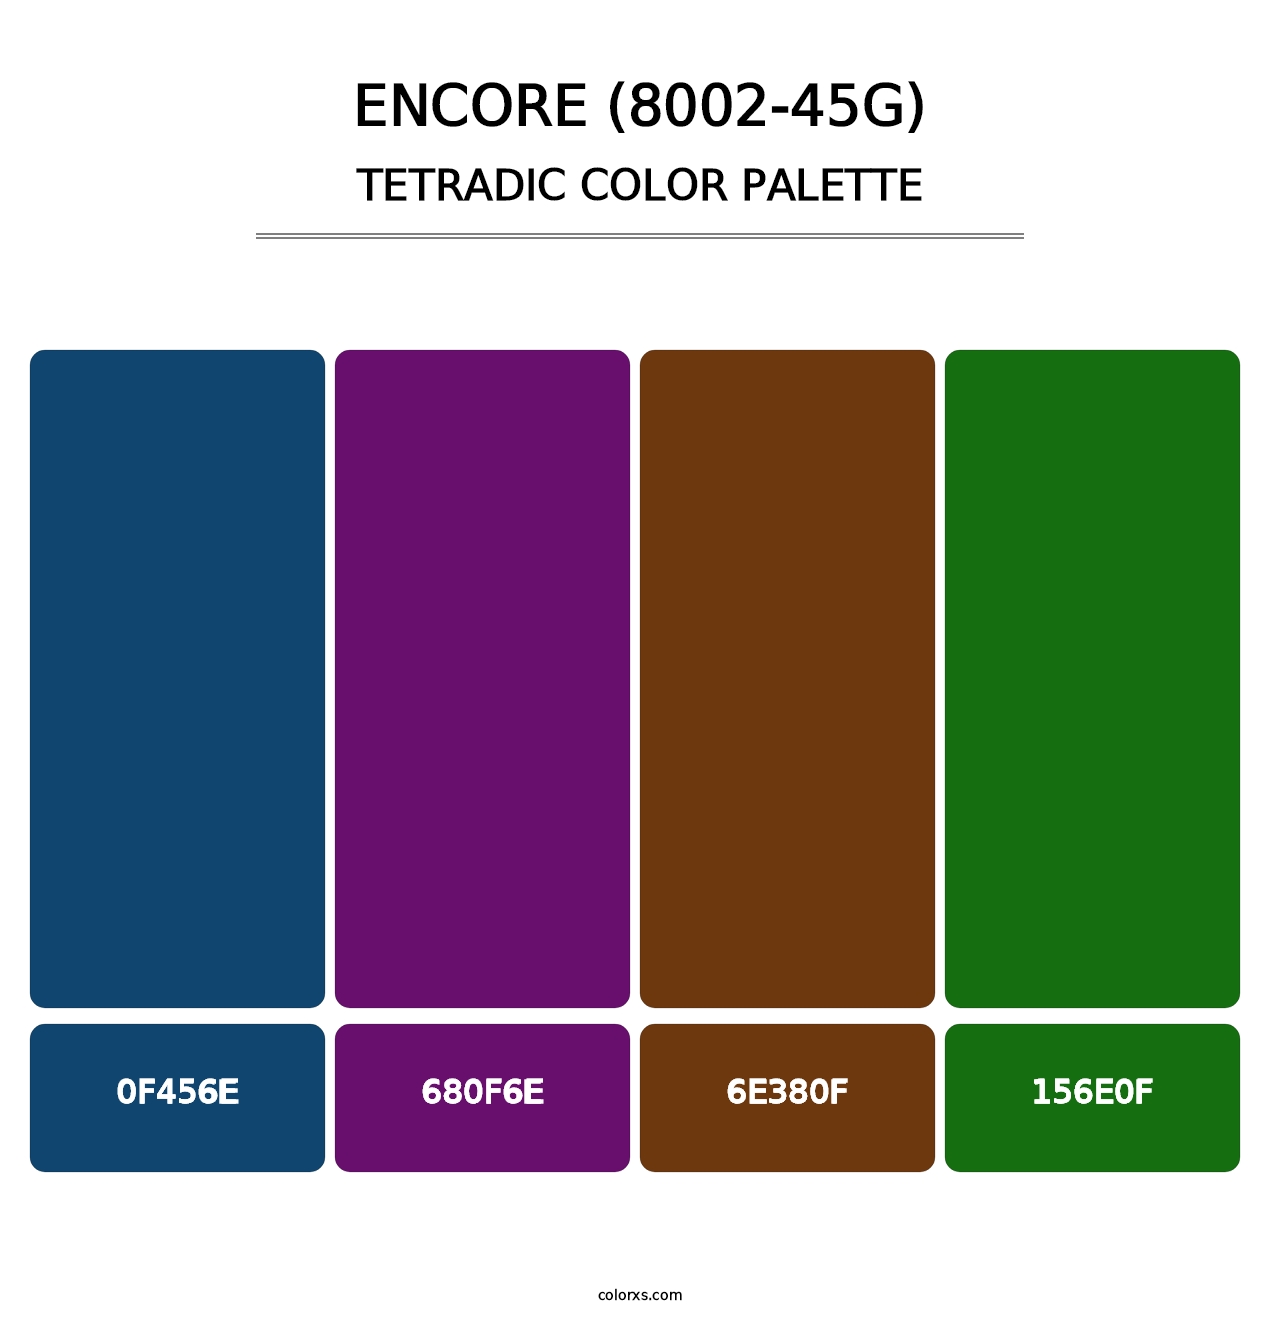 Encore (8002-45G) - Tetradic Color Palette